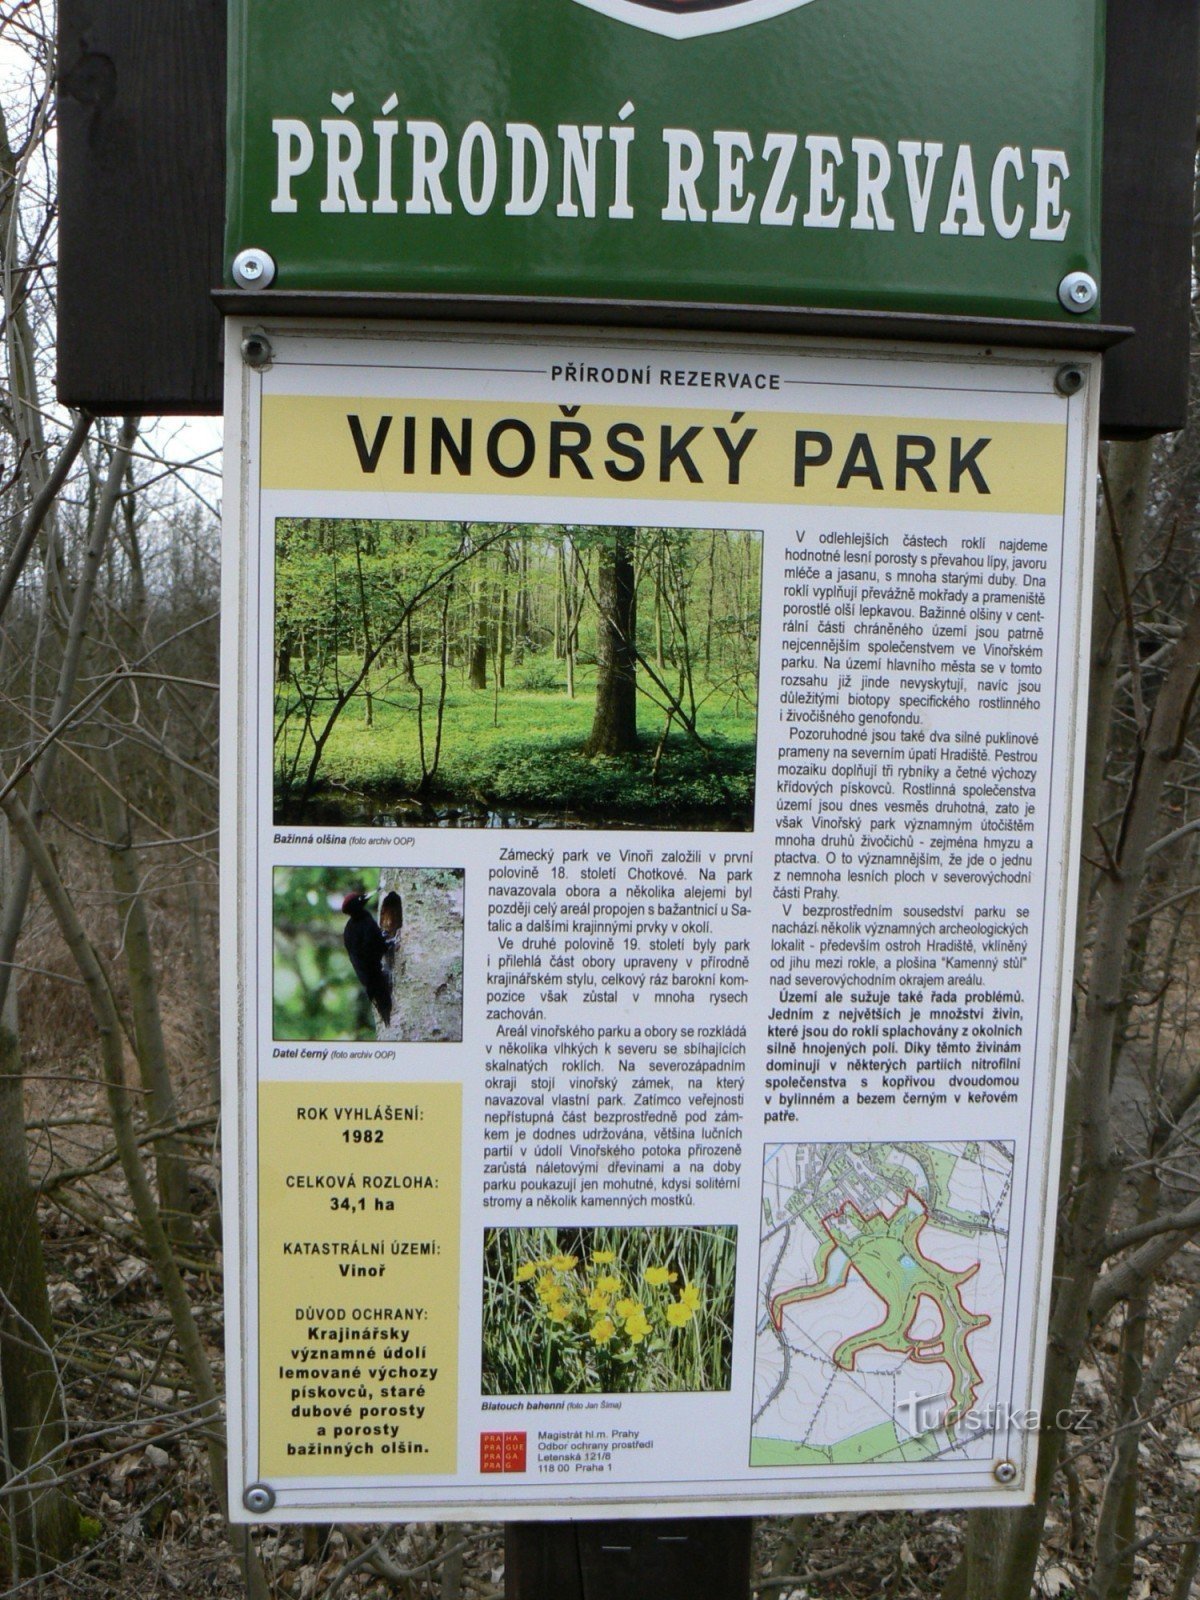 Обозначение парка от фазана Саталицка